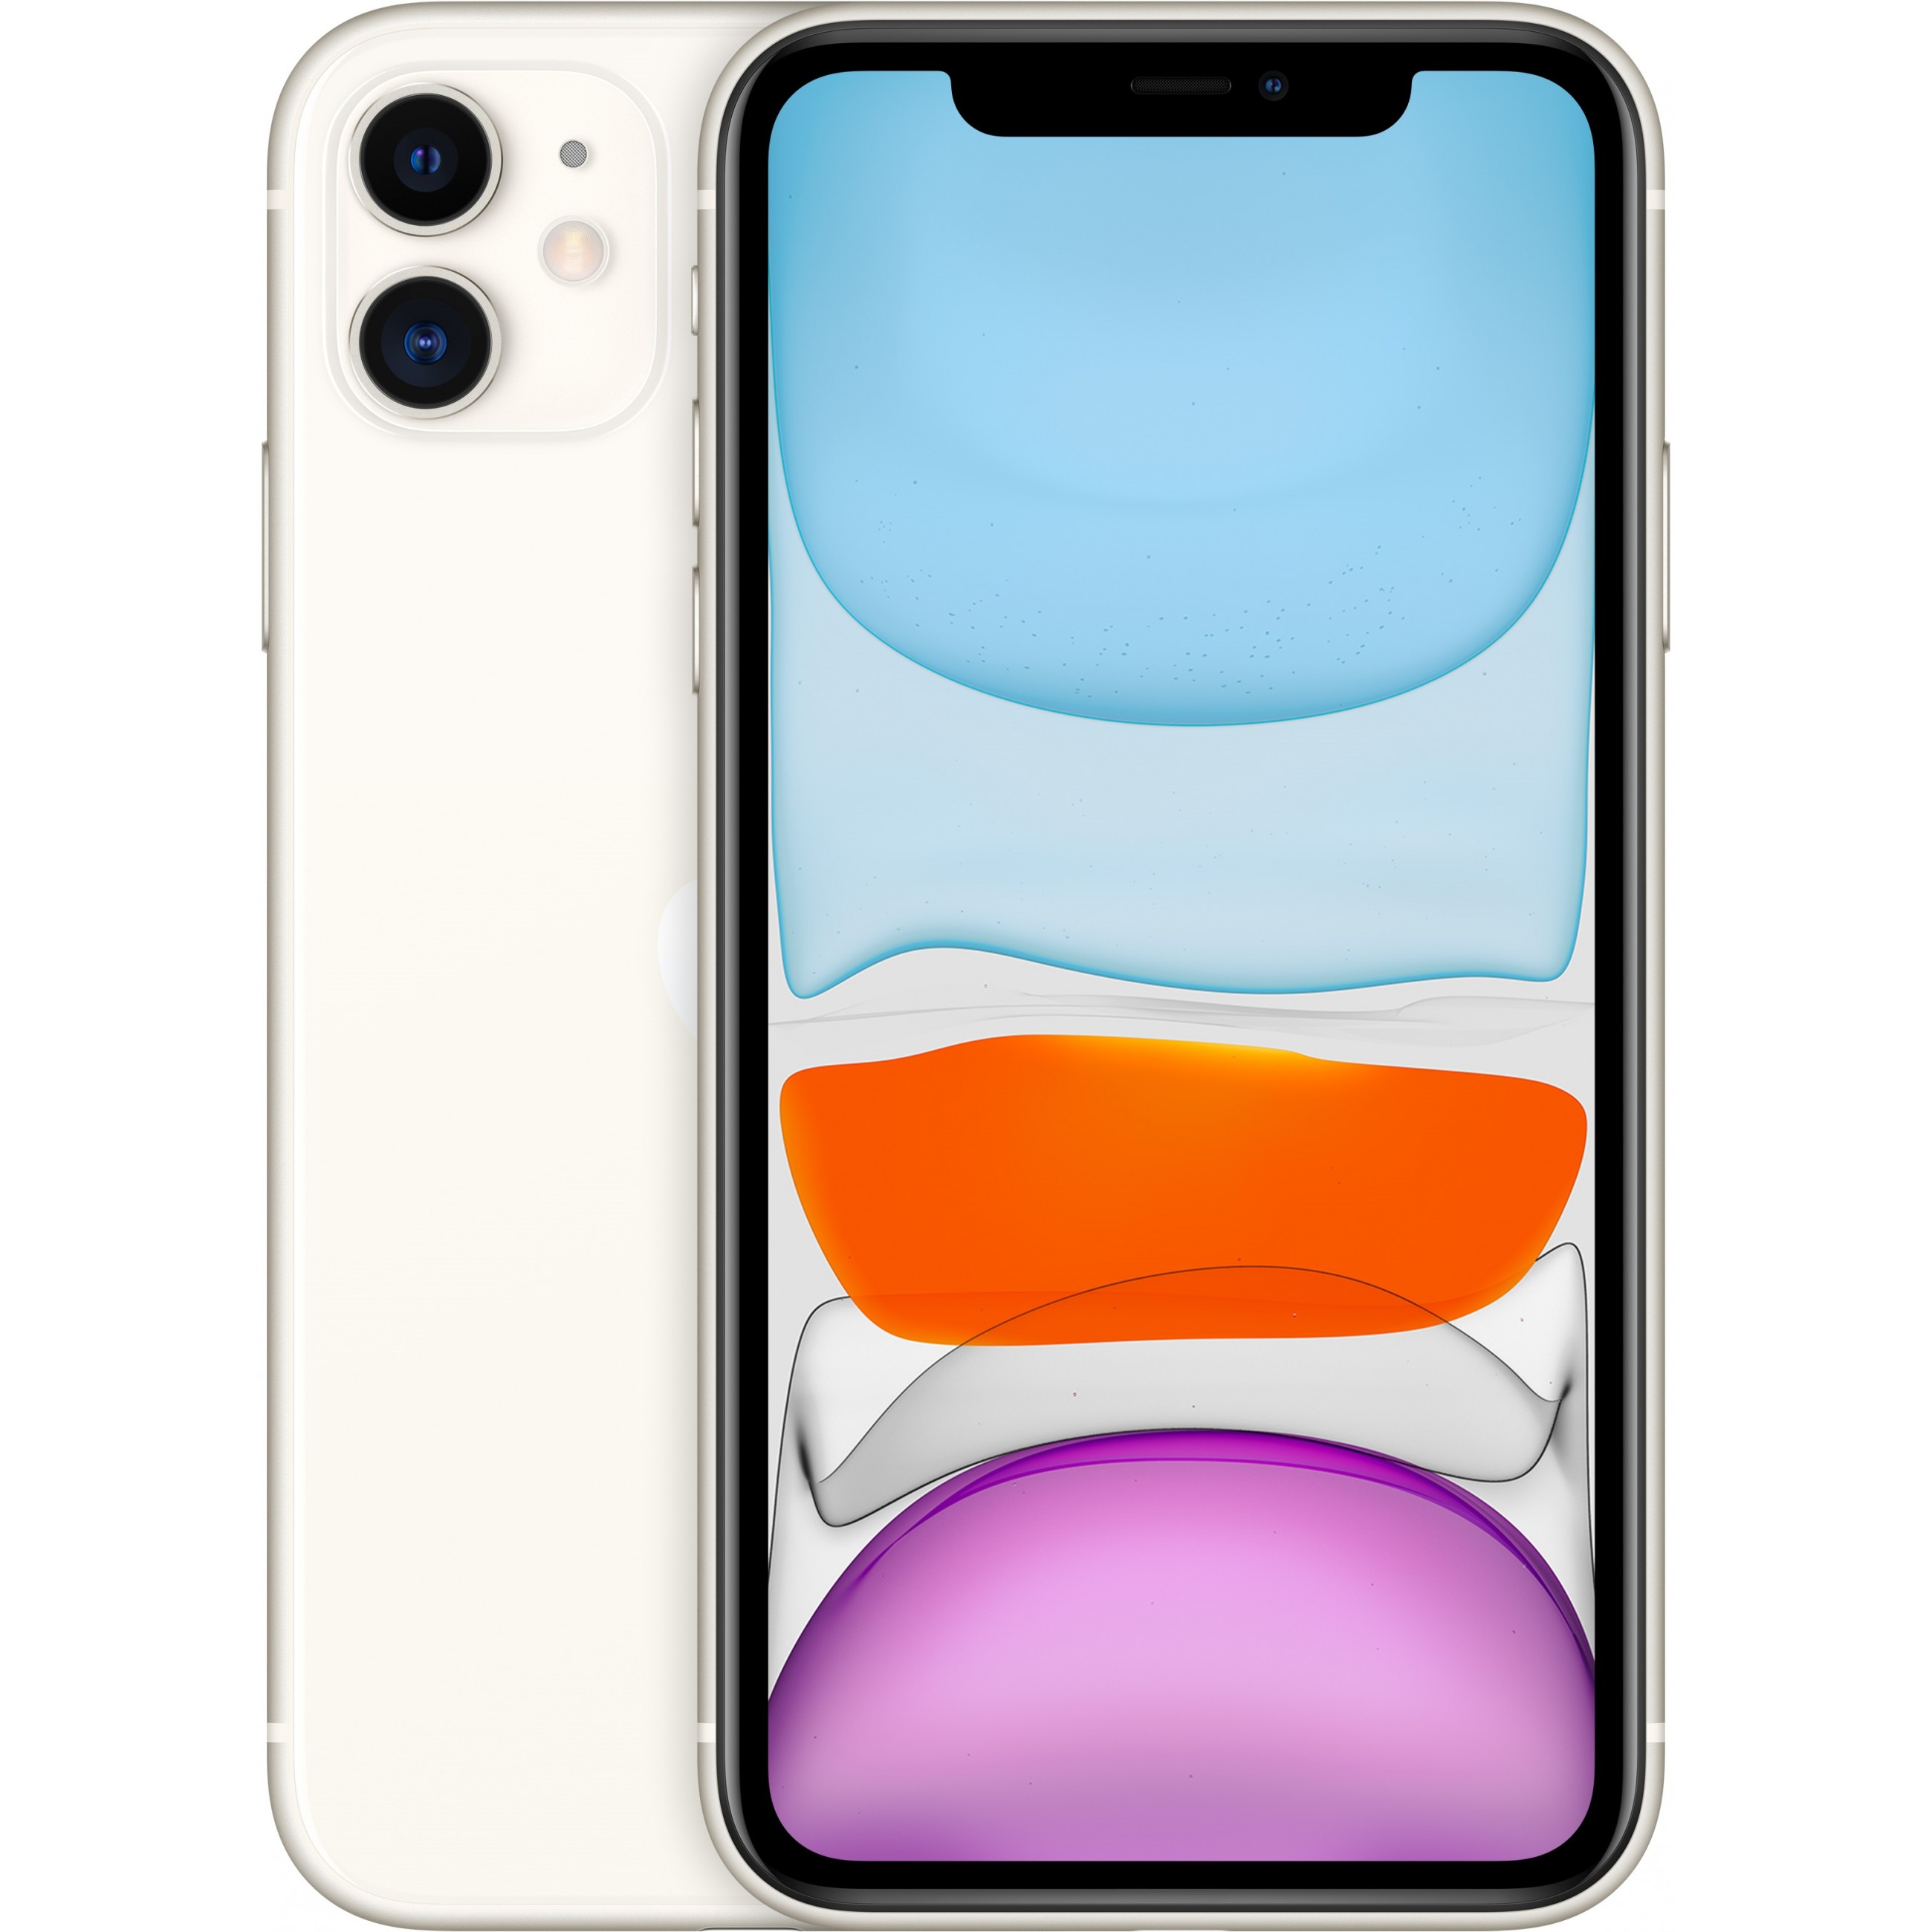 Apple iPhone 11 155 cm (6.1 Zoll) Dual-SIM iOS 14 4G 64 GB Weiß